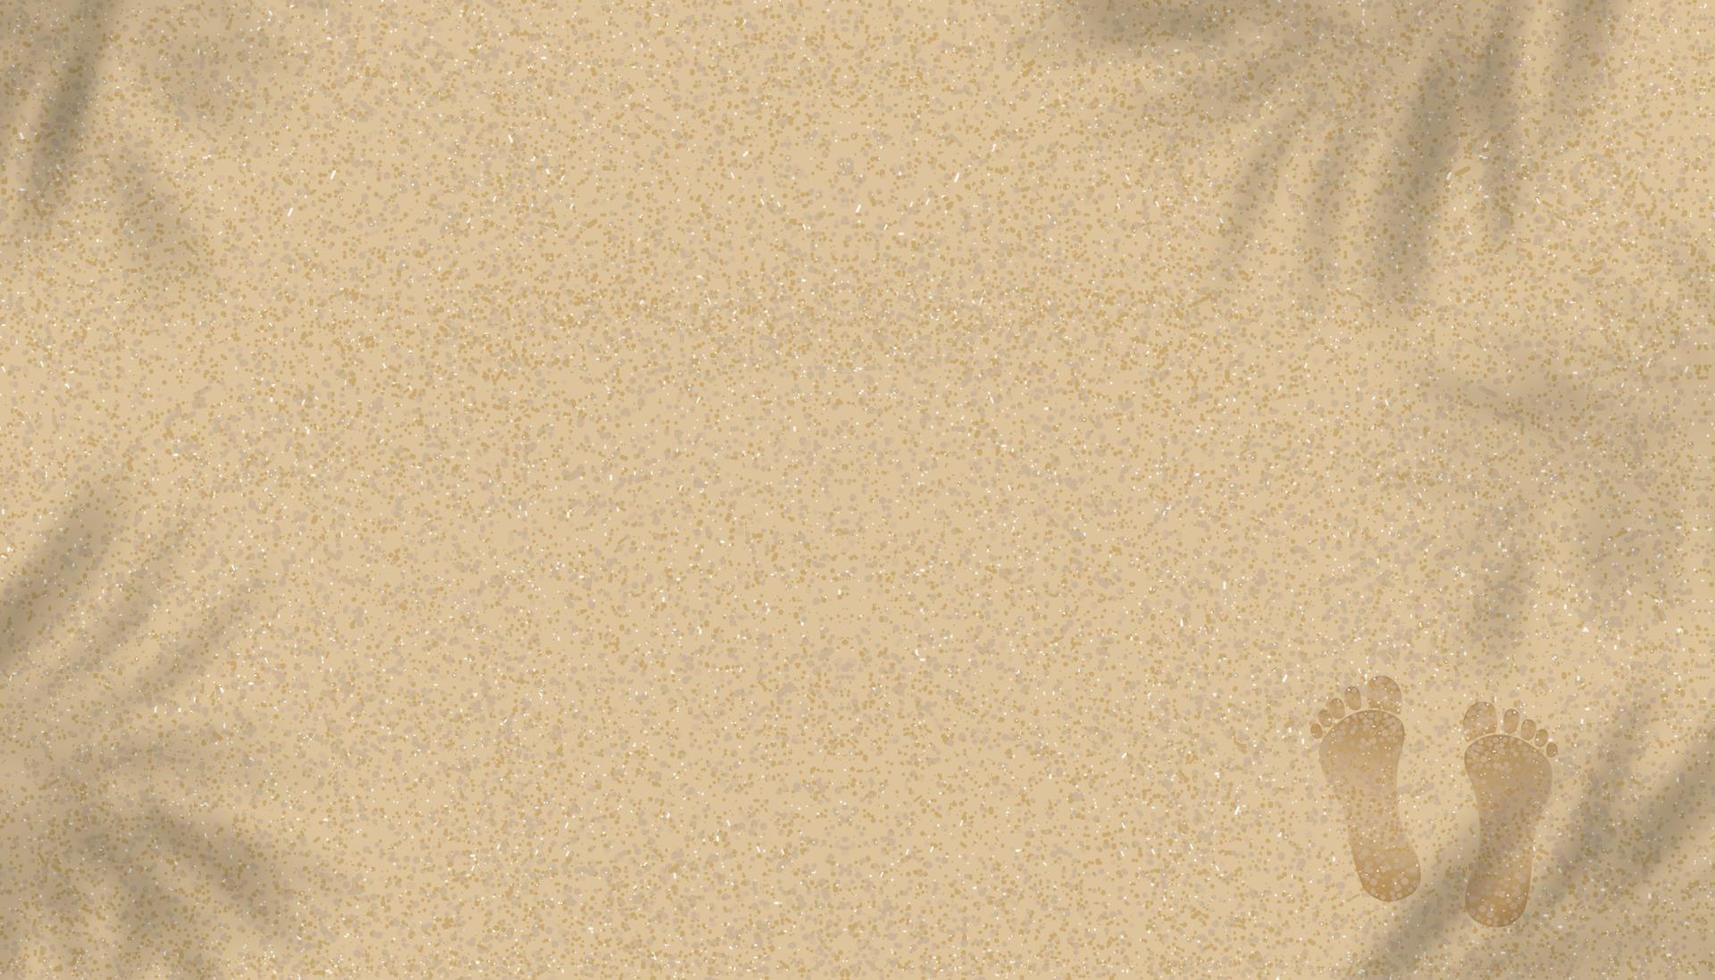 fondo de textura de playa de arena con sombra de hoja de palma y huellas de pies humanos, fondo de ilustración vectorial duna de arena de playa marrón con descalzo para el fondo de la pancarta de verano. vector